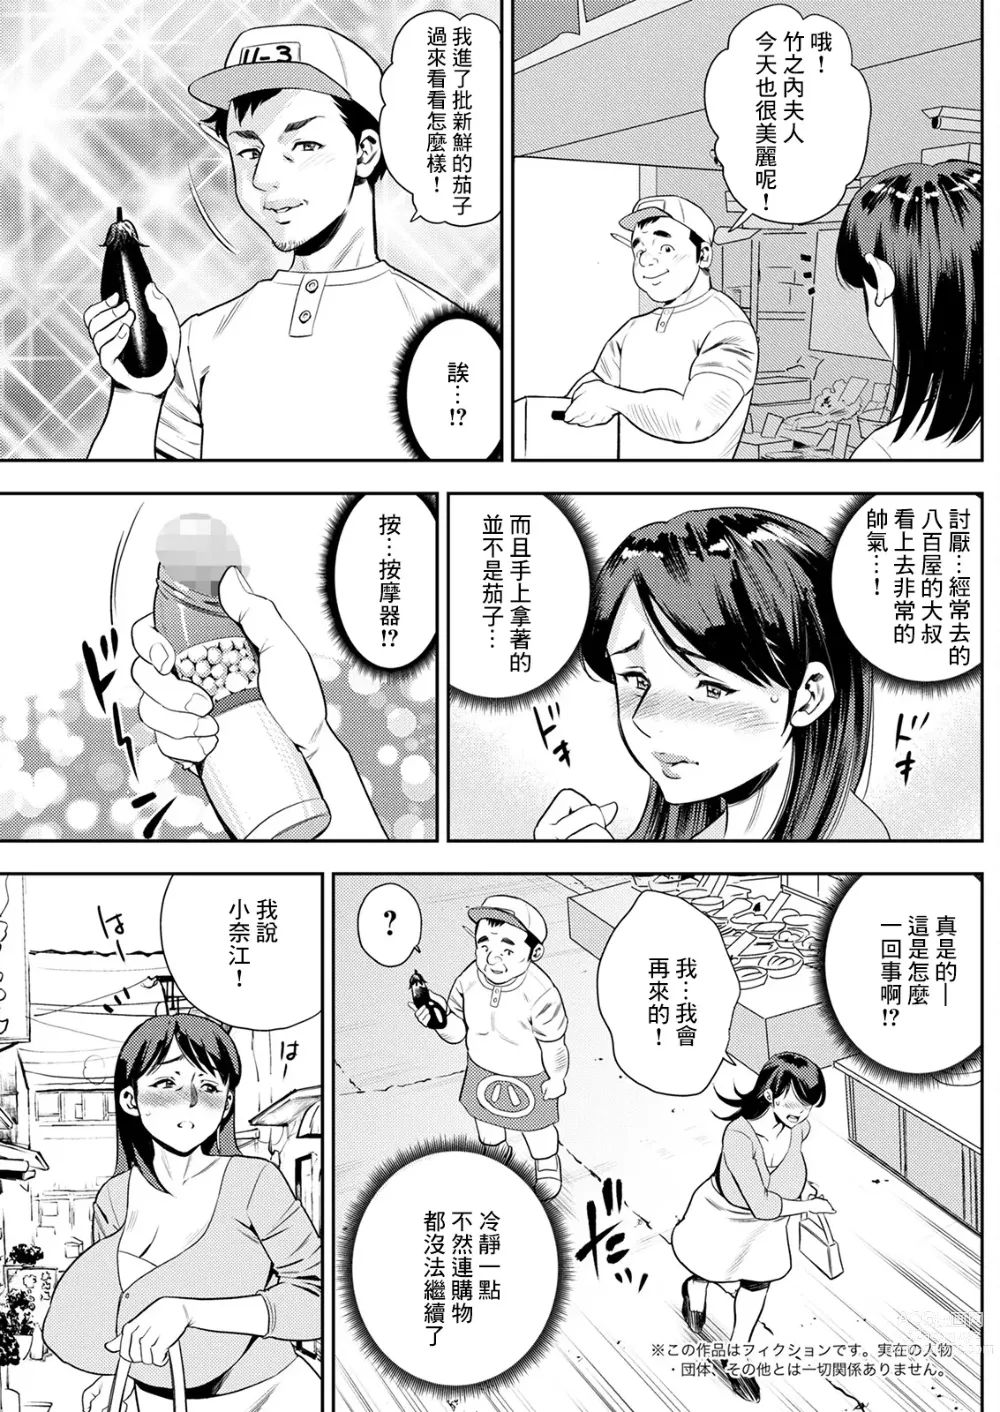 Page 3 of manga Nnihon  Josei   Inranka Keikaku